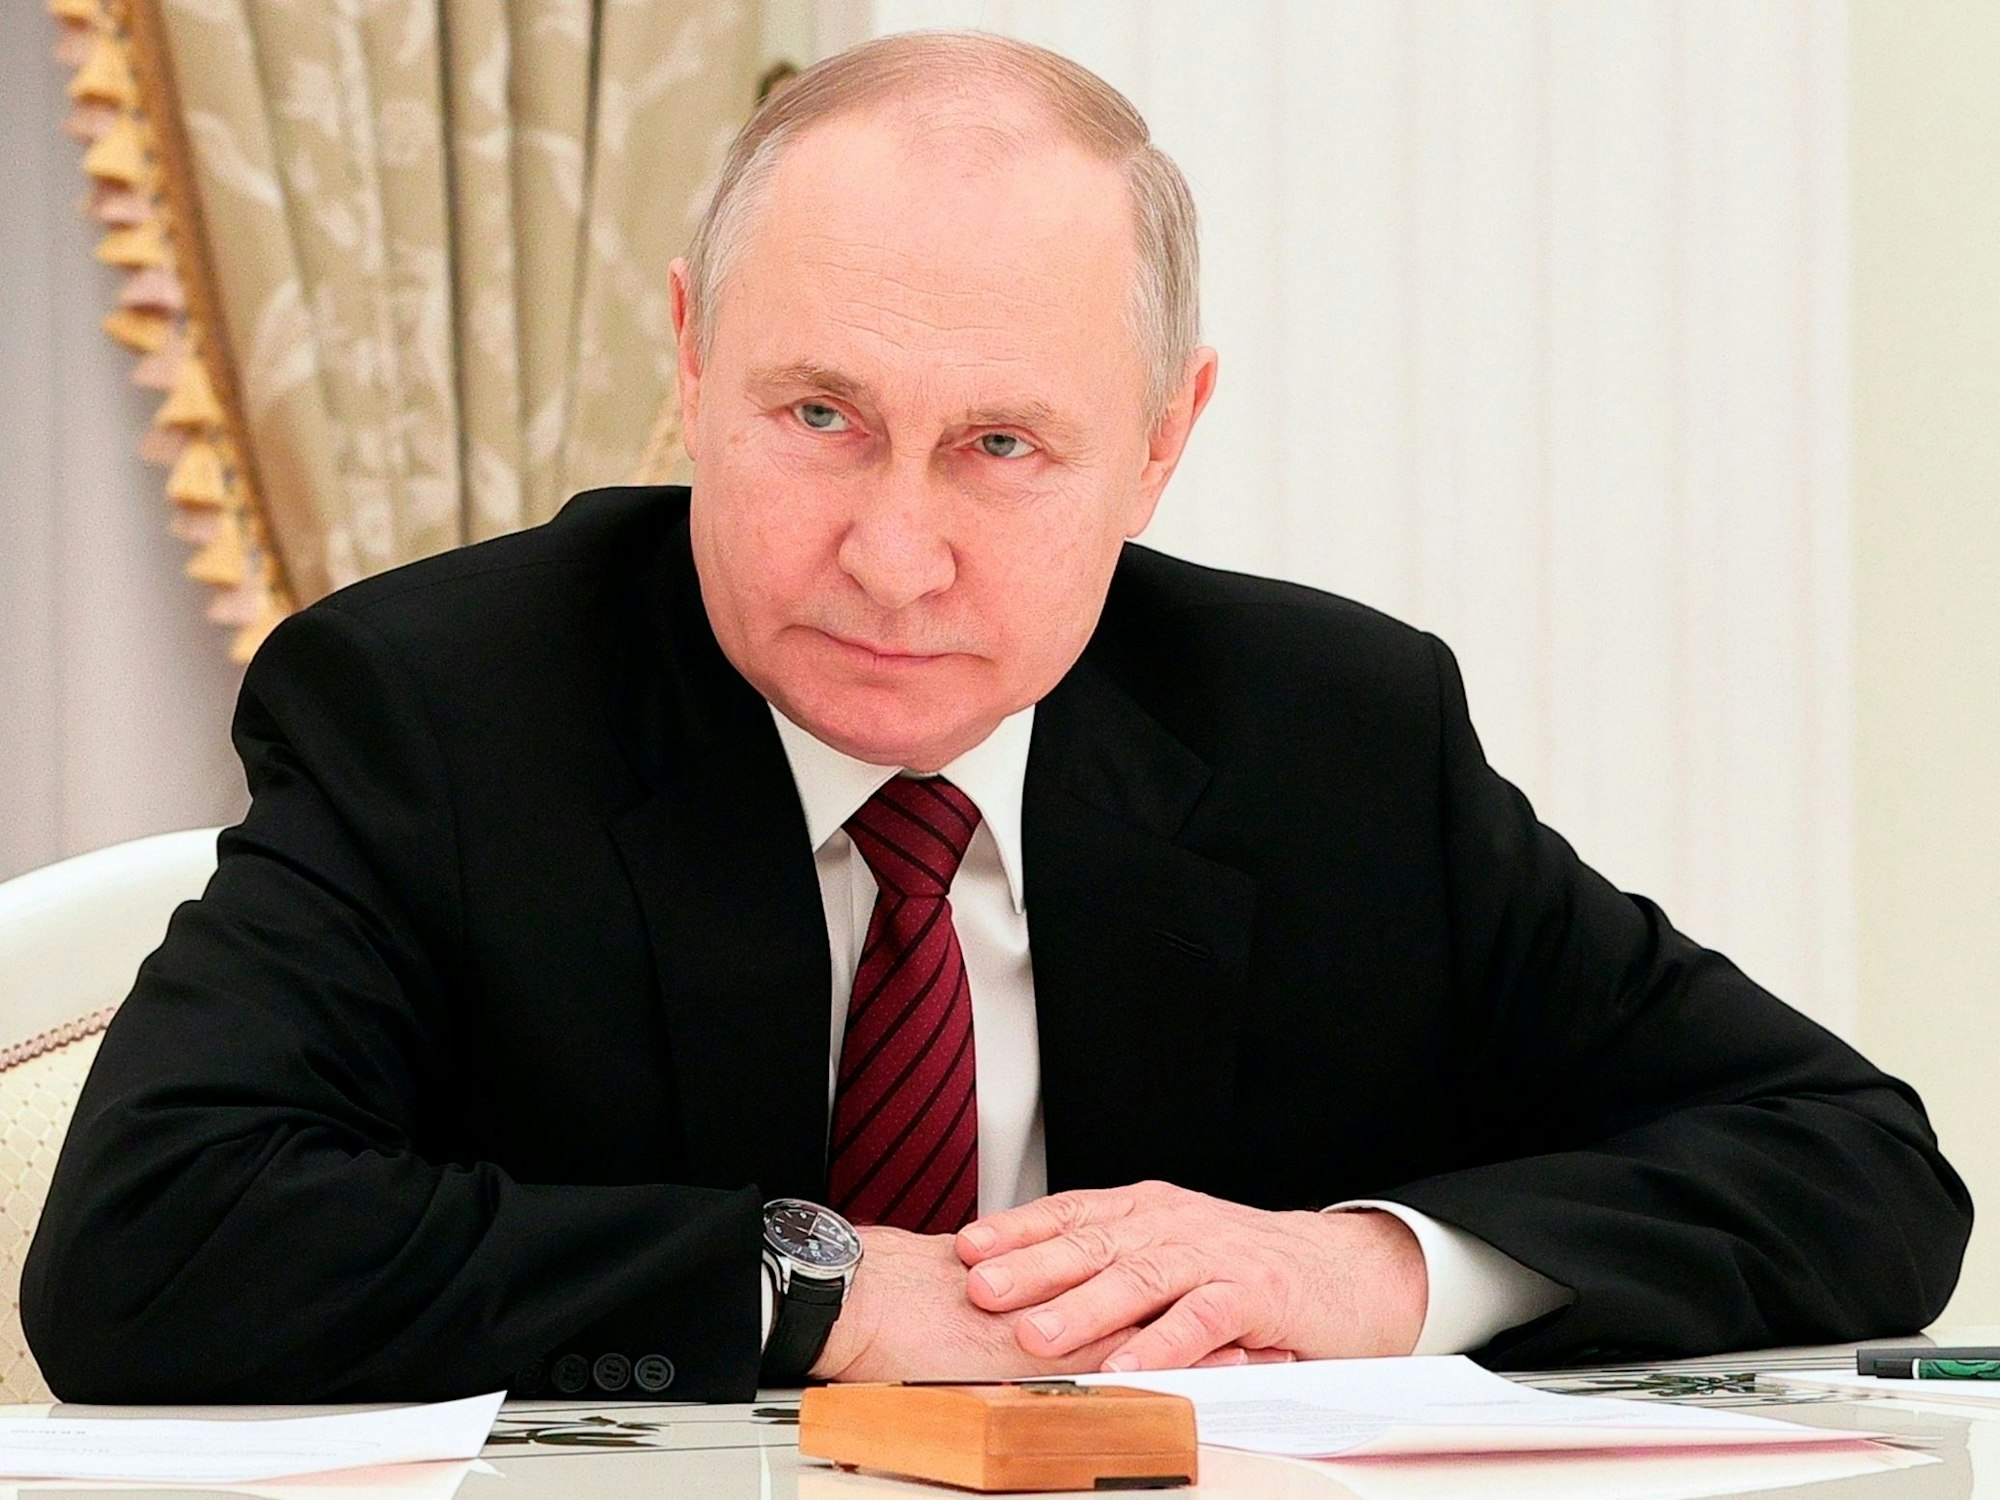 Das Foto von Februar 2023 zeigt den russischen Präsidenten Wladimir Putin. Er trägt einen schwarzen Anzug, vor ihm auf dem Tisch liegen Papiere.